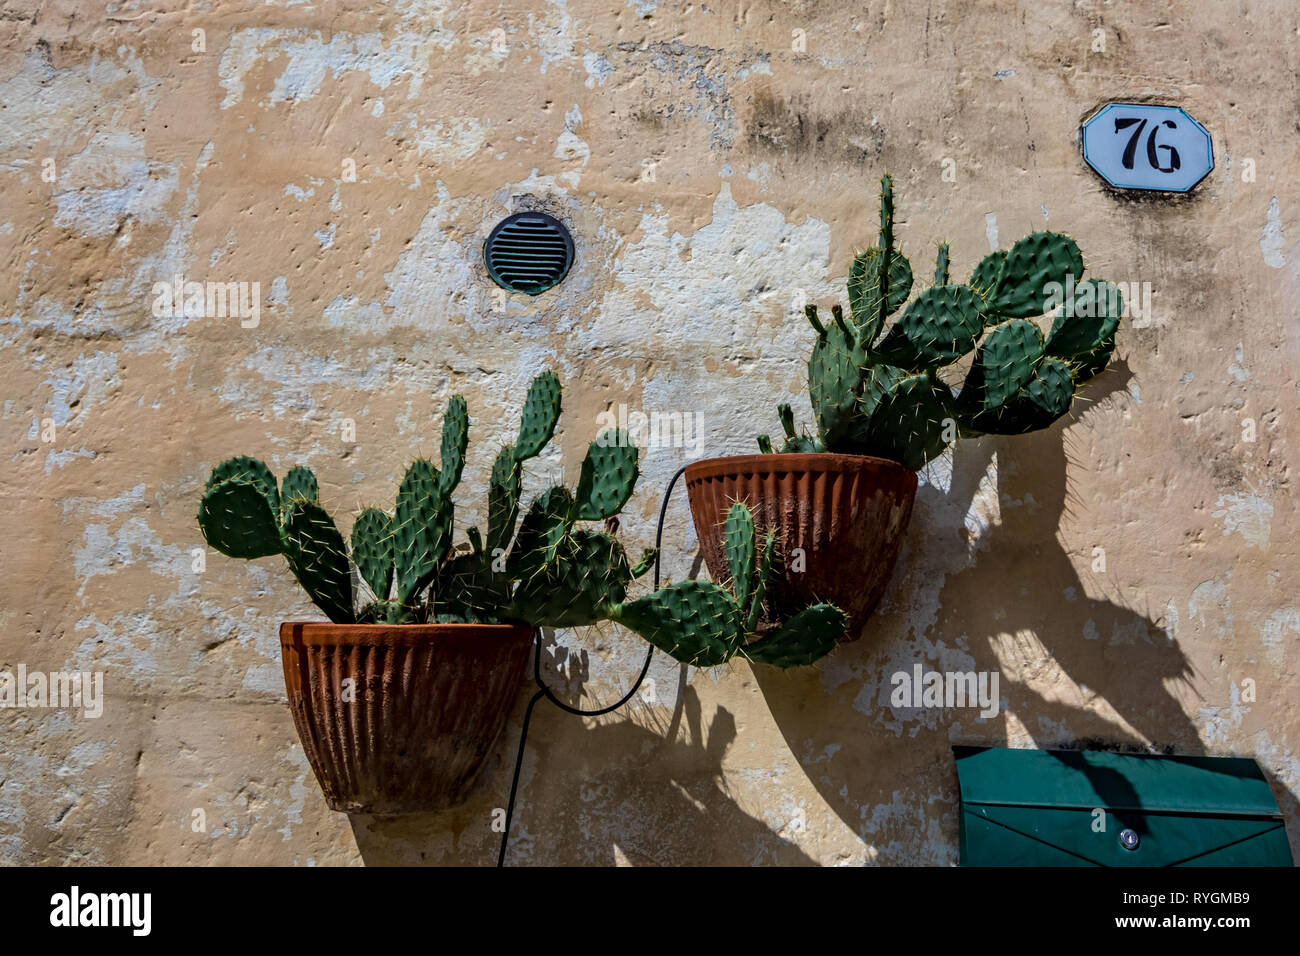 Un sano verde cactus crescere in marrone vasi di terracotta sotto il caldo sole estivo a Matera, Italia. Strada segno vecchio numero 76, settanta-sei sul muro di pietra Foto Stock